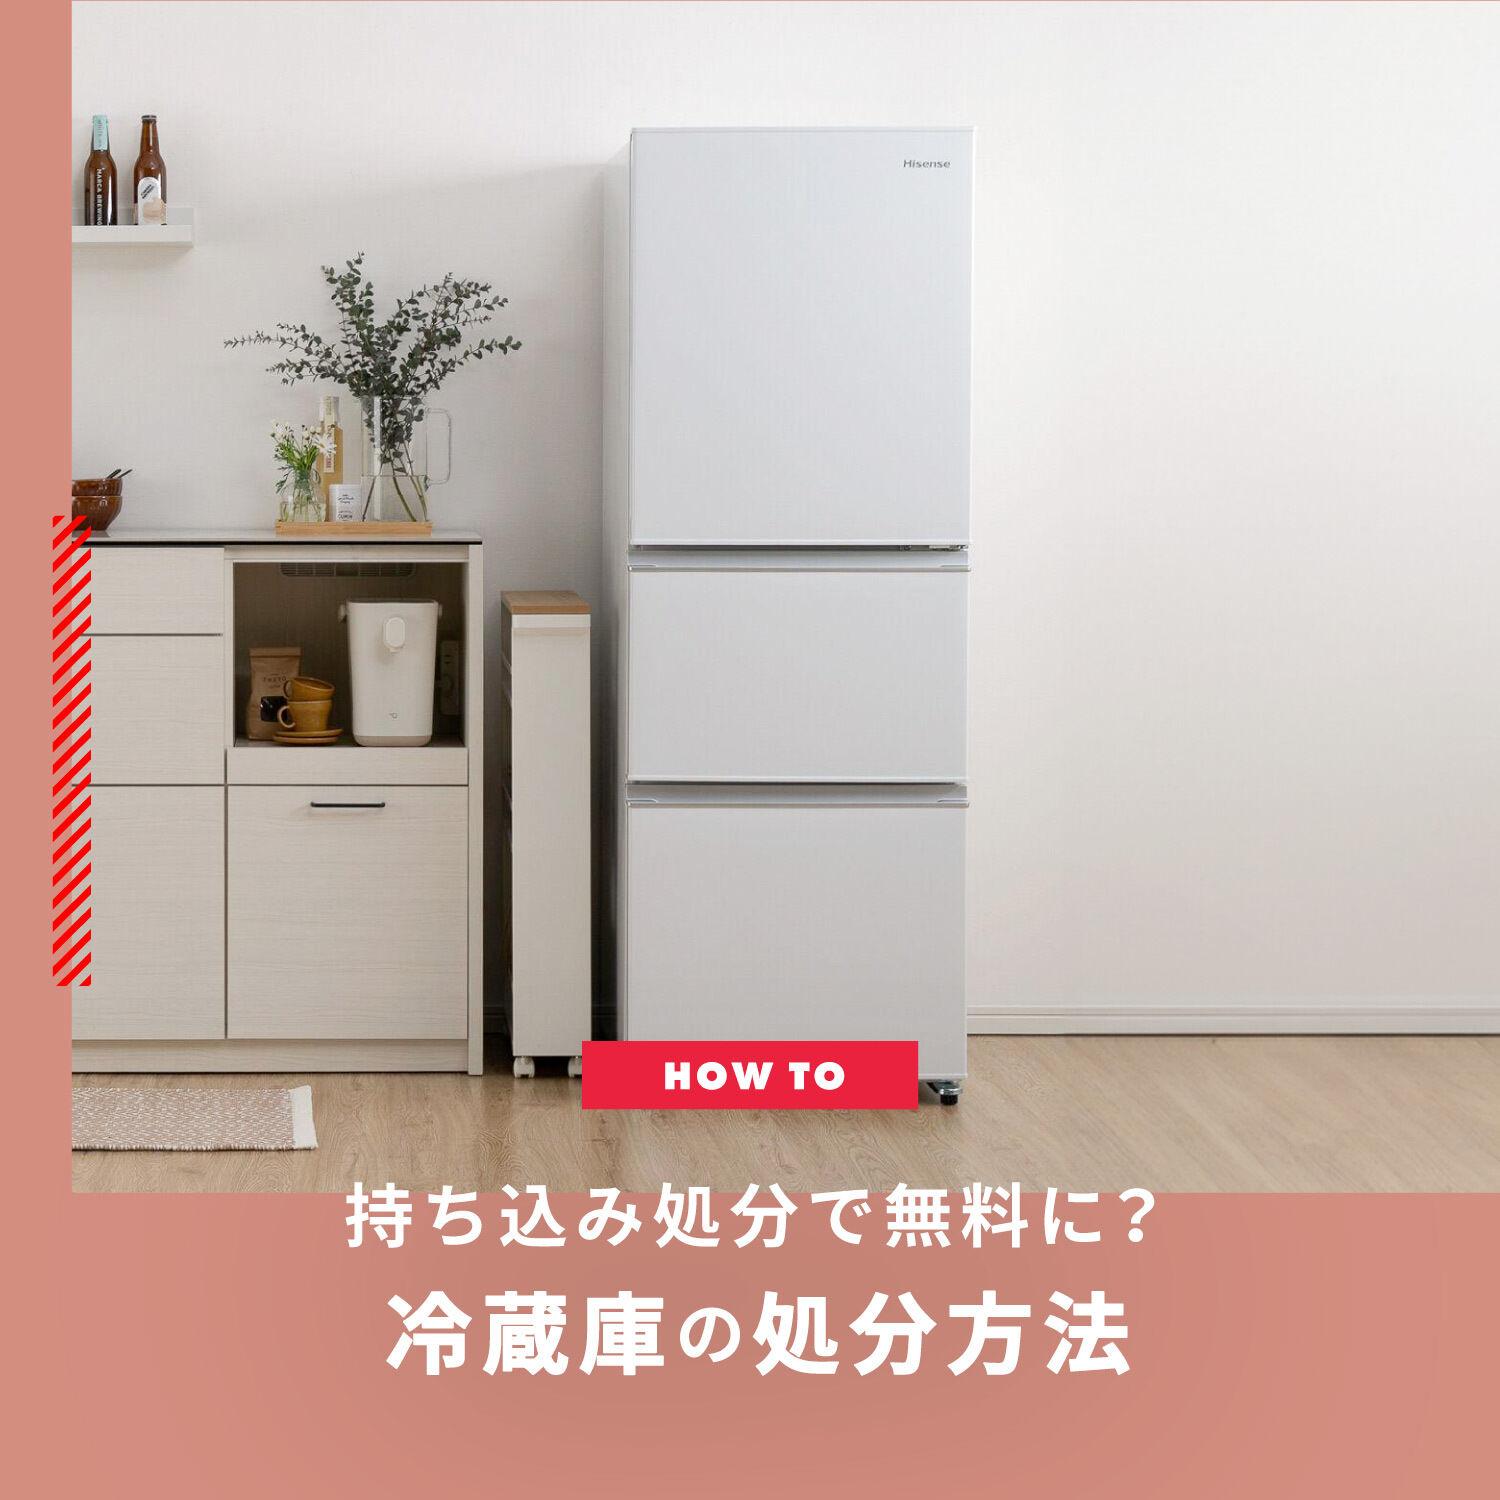 冷蔵庫は持ち込み処分で無料になる？冷蔵庫の処分方法を解説します | CLAS